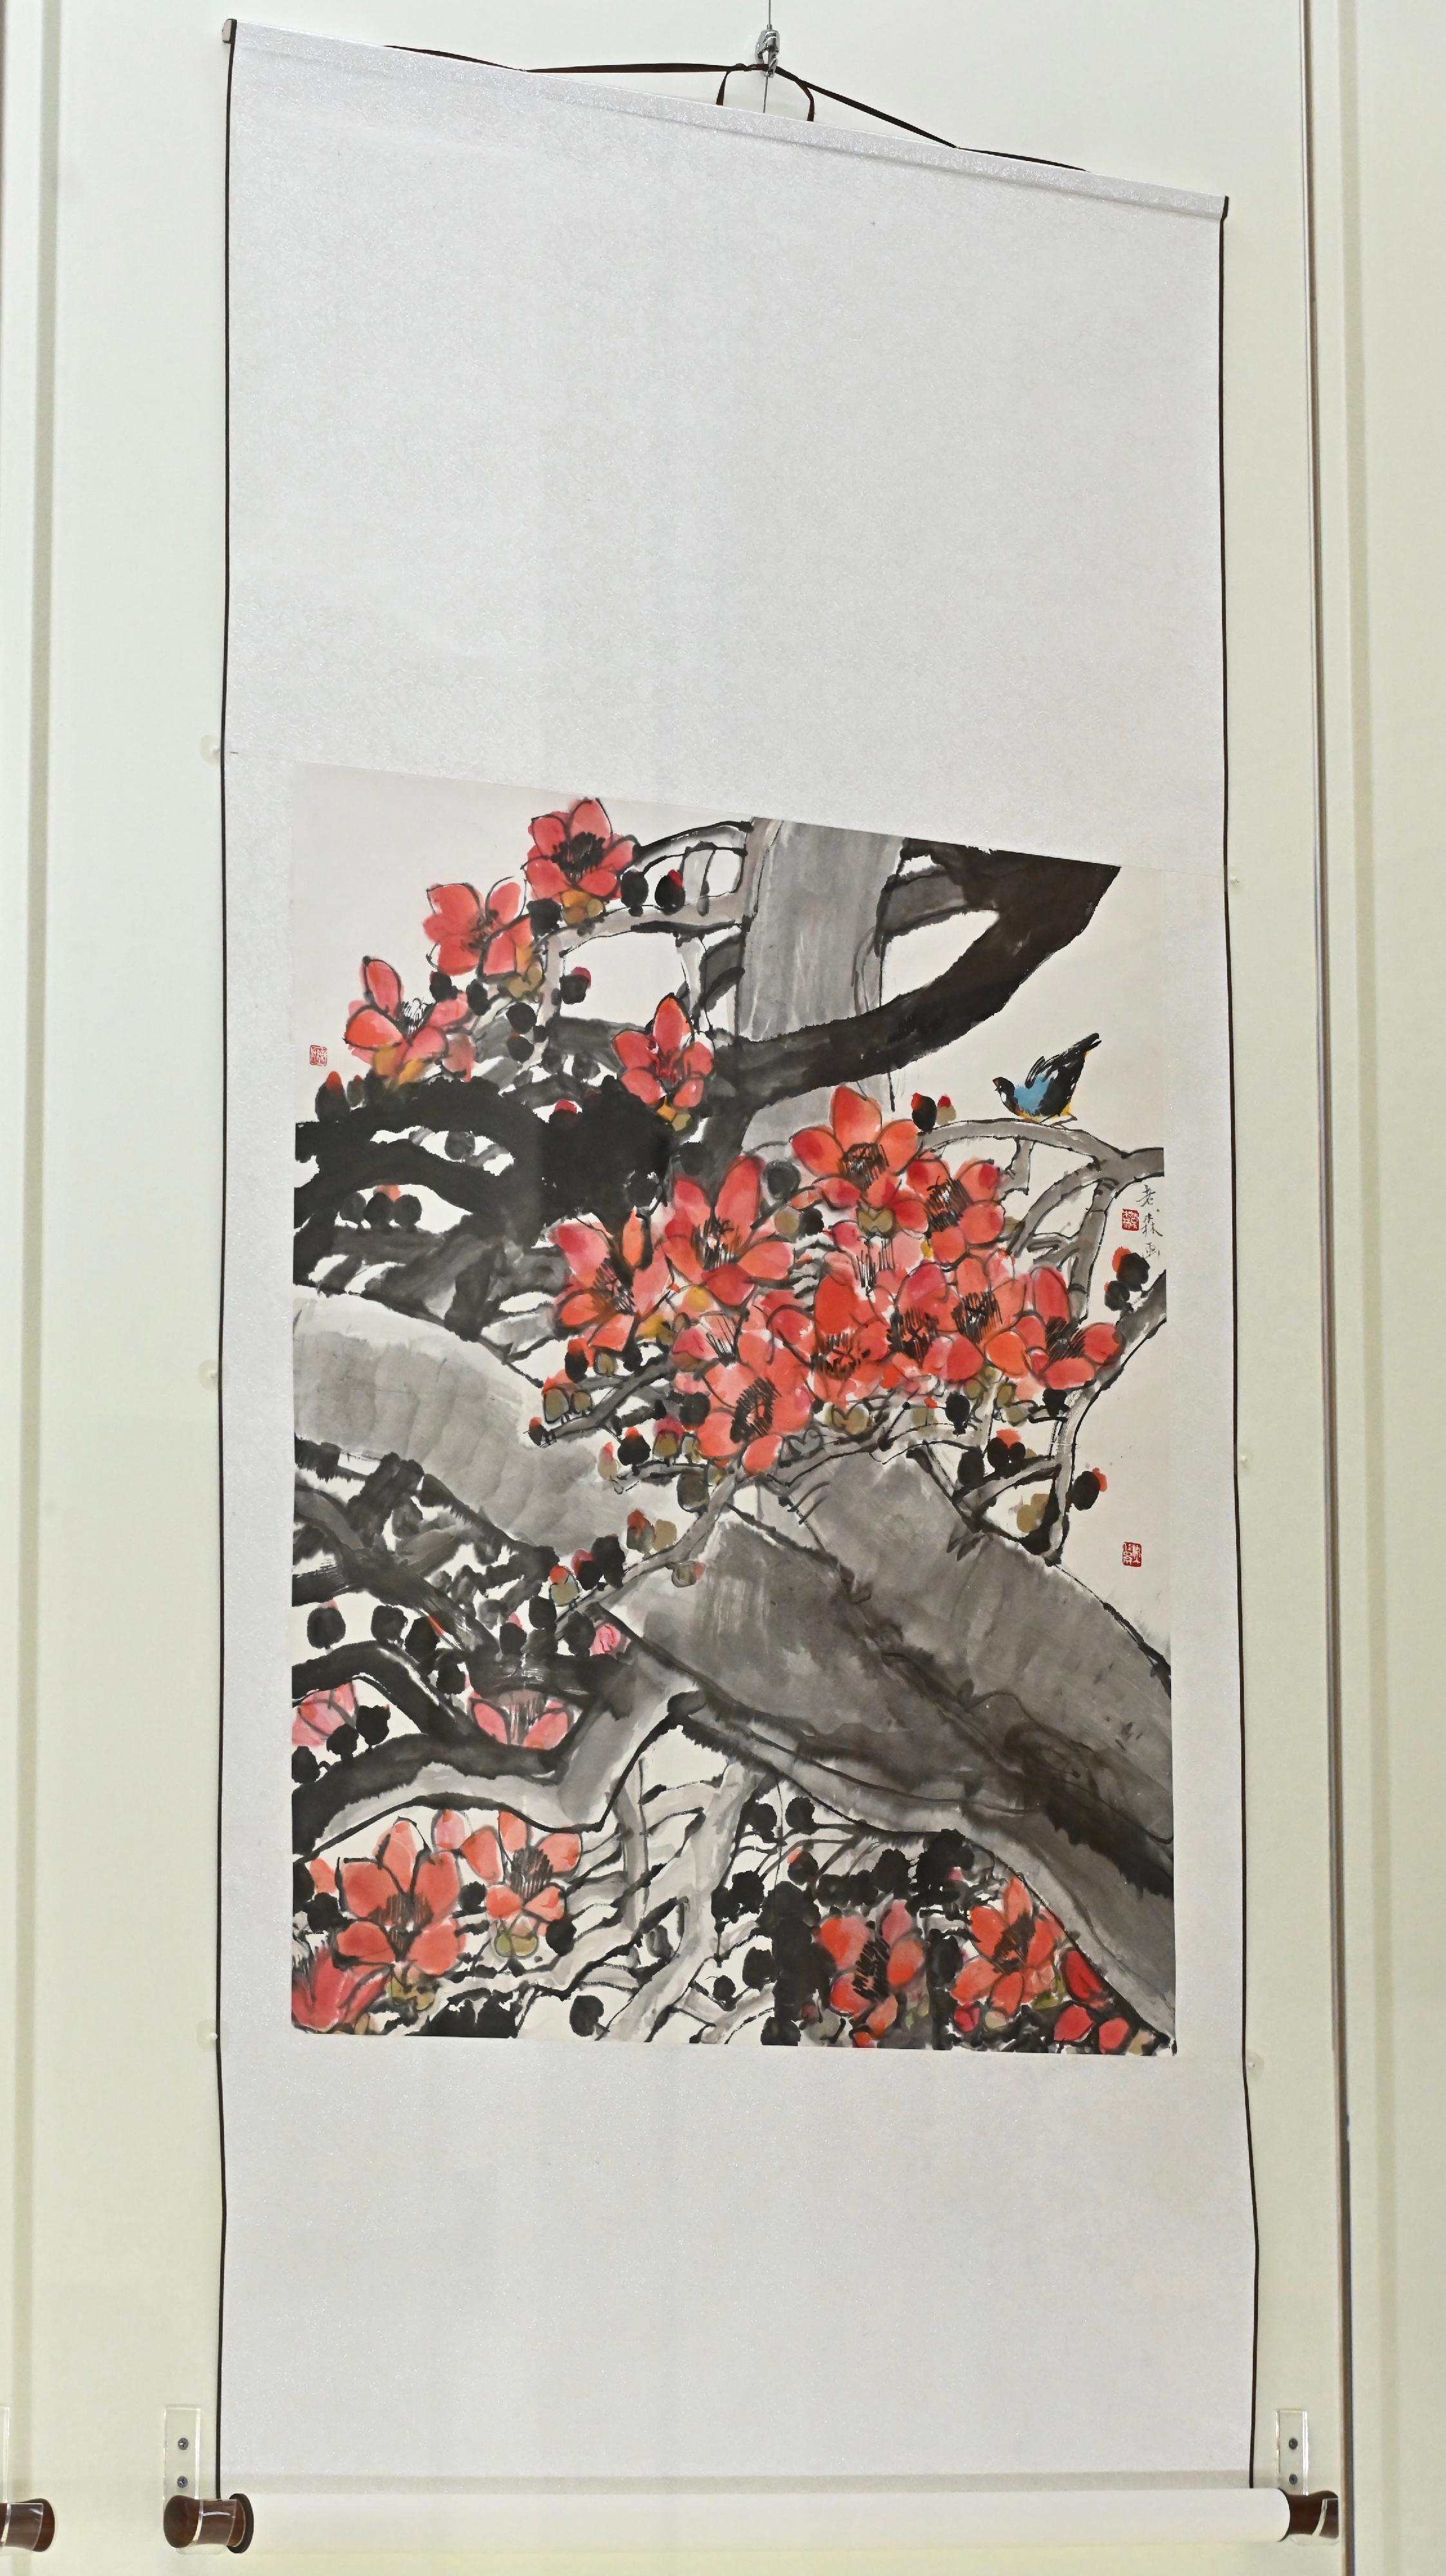 香港文化博物館明日（五月一日）起舉辦「墨境淋漓─陳榮森捐贈作品展」。圖示嶺南畫派畫家陳榮森的作品《紅棉彩鳥》。